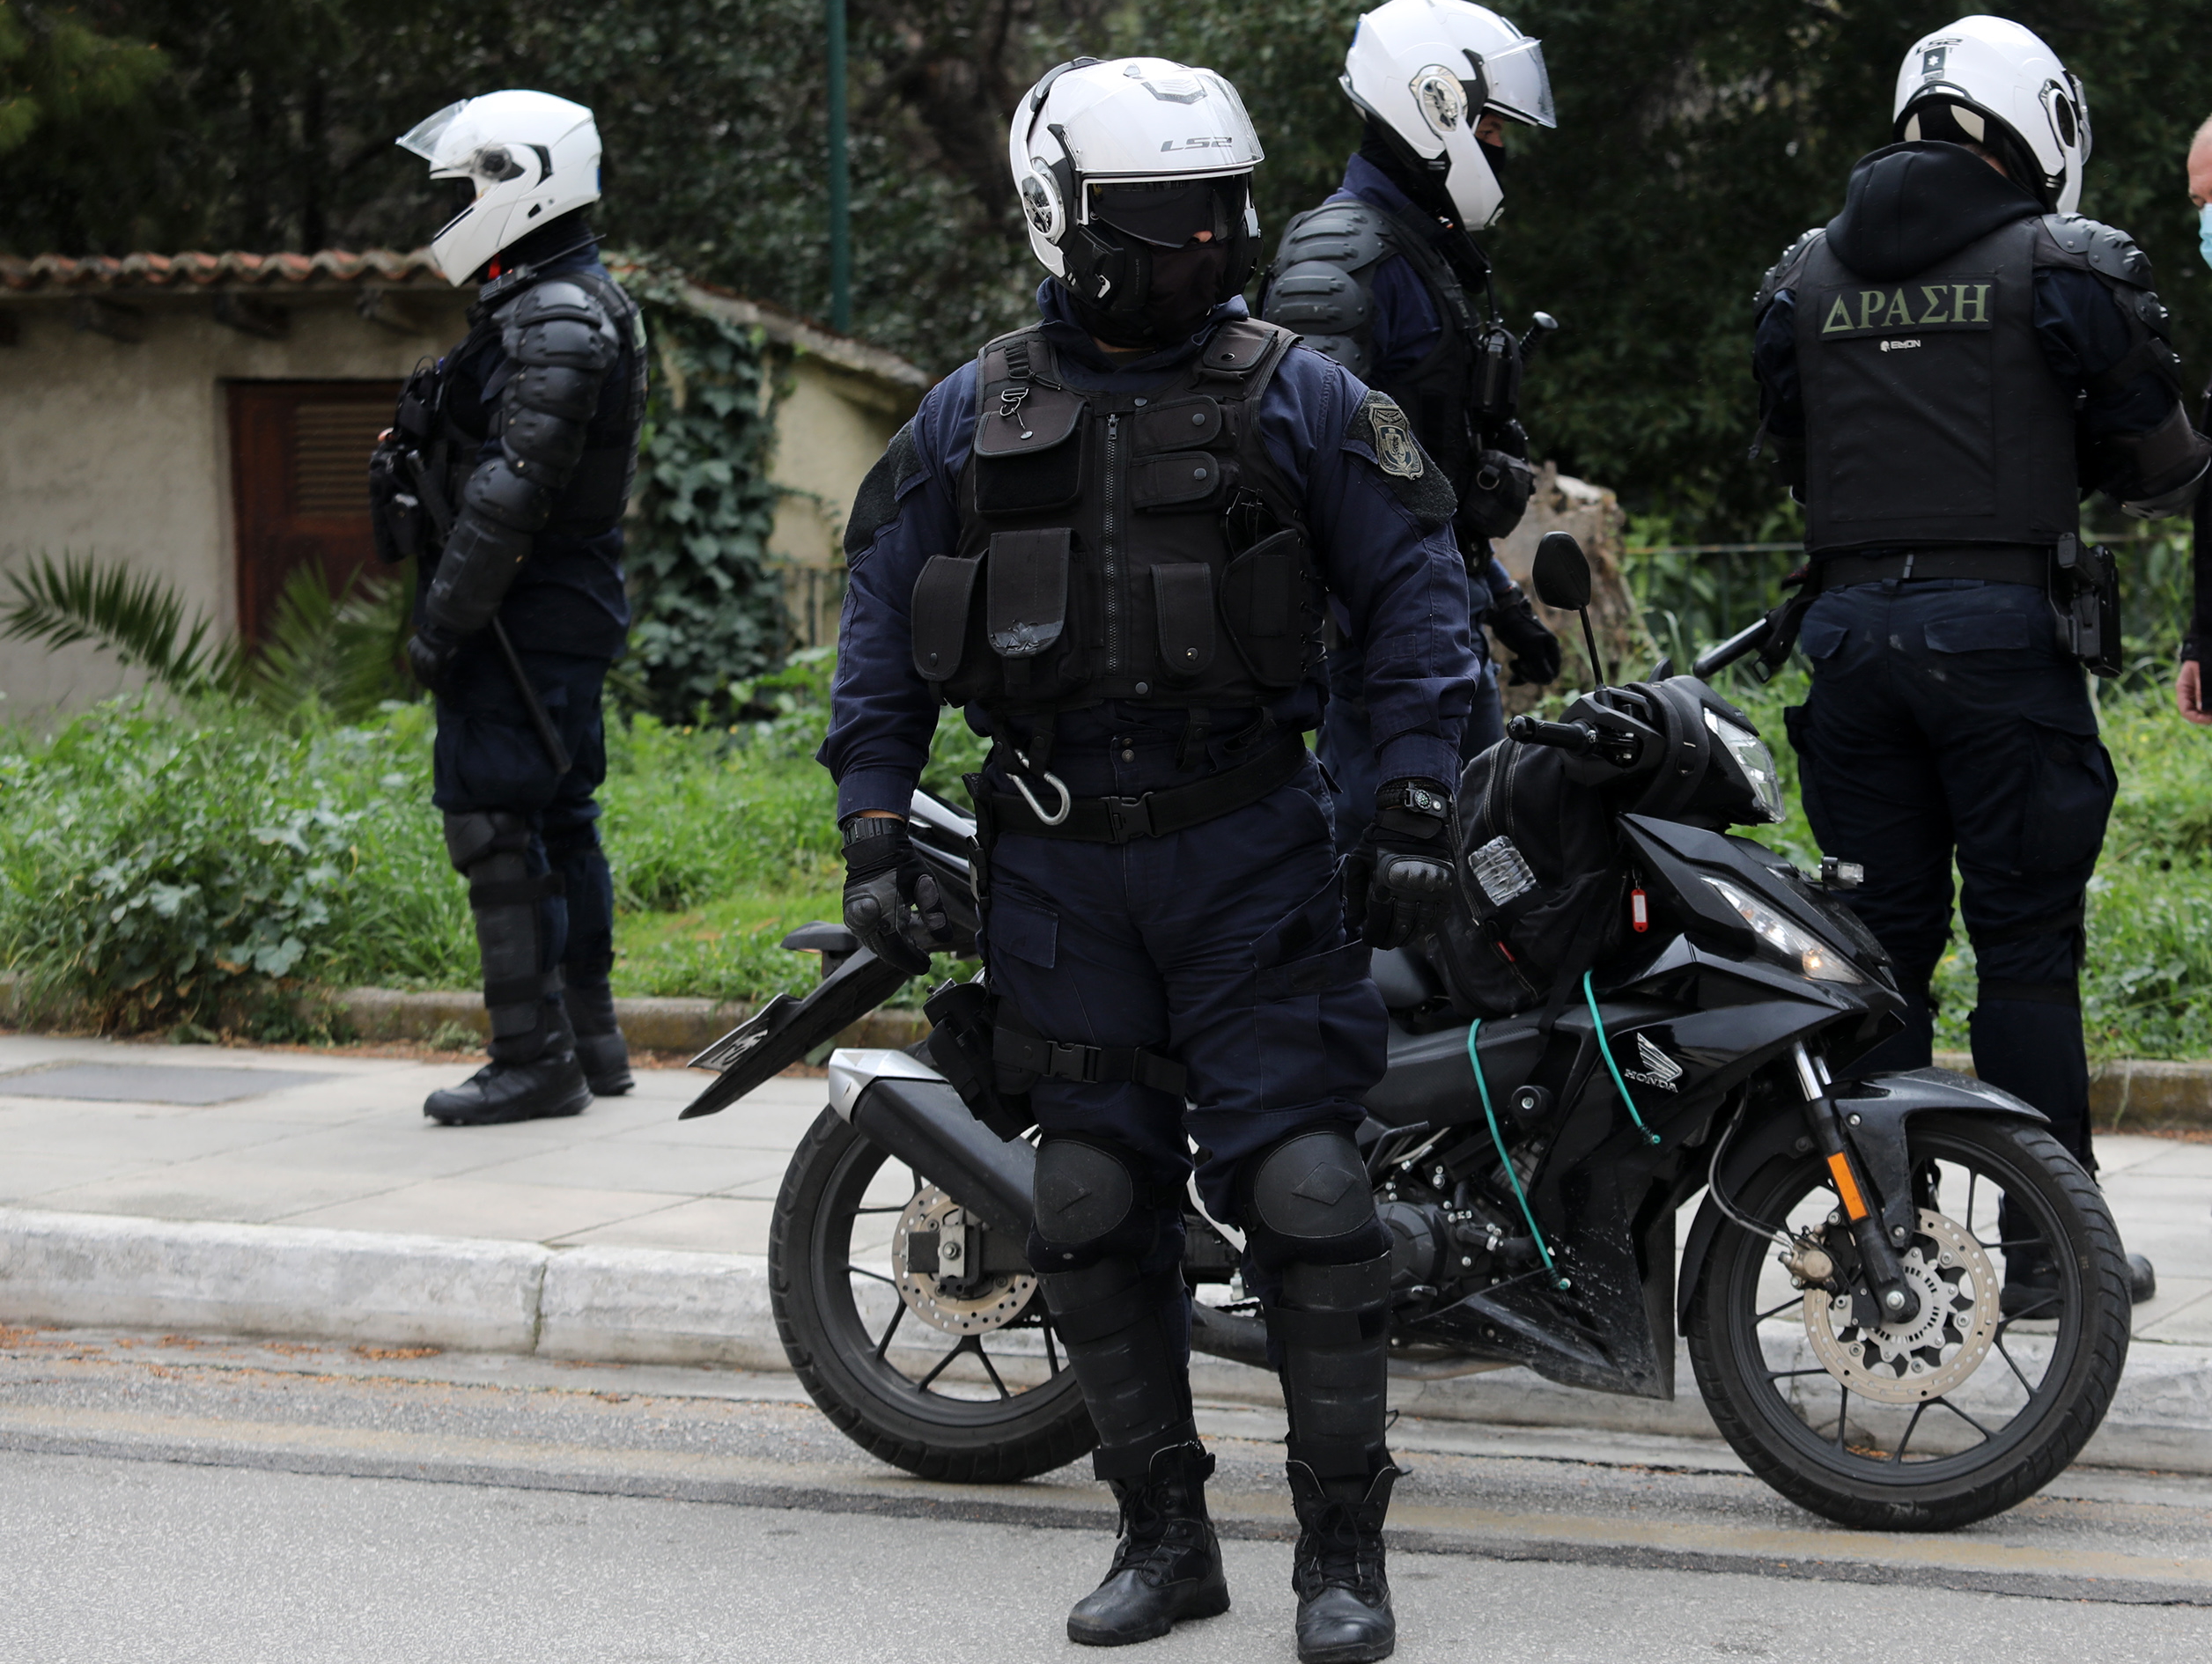 Χαλάνδρι: Έκλεψαν το υπηρεσιακό όπλο αστυνομικού μέσα από το διαμέρισμά του